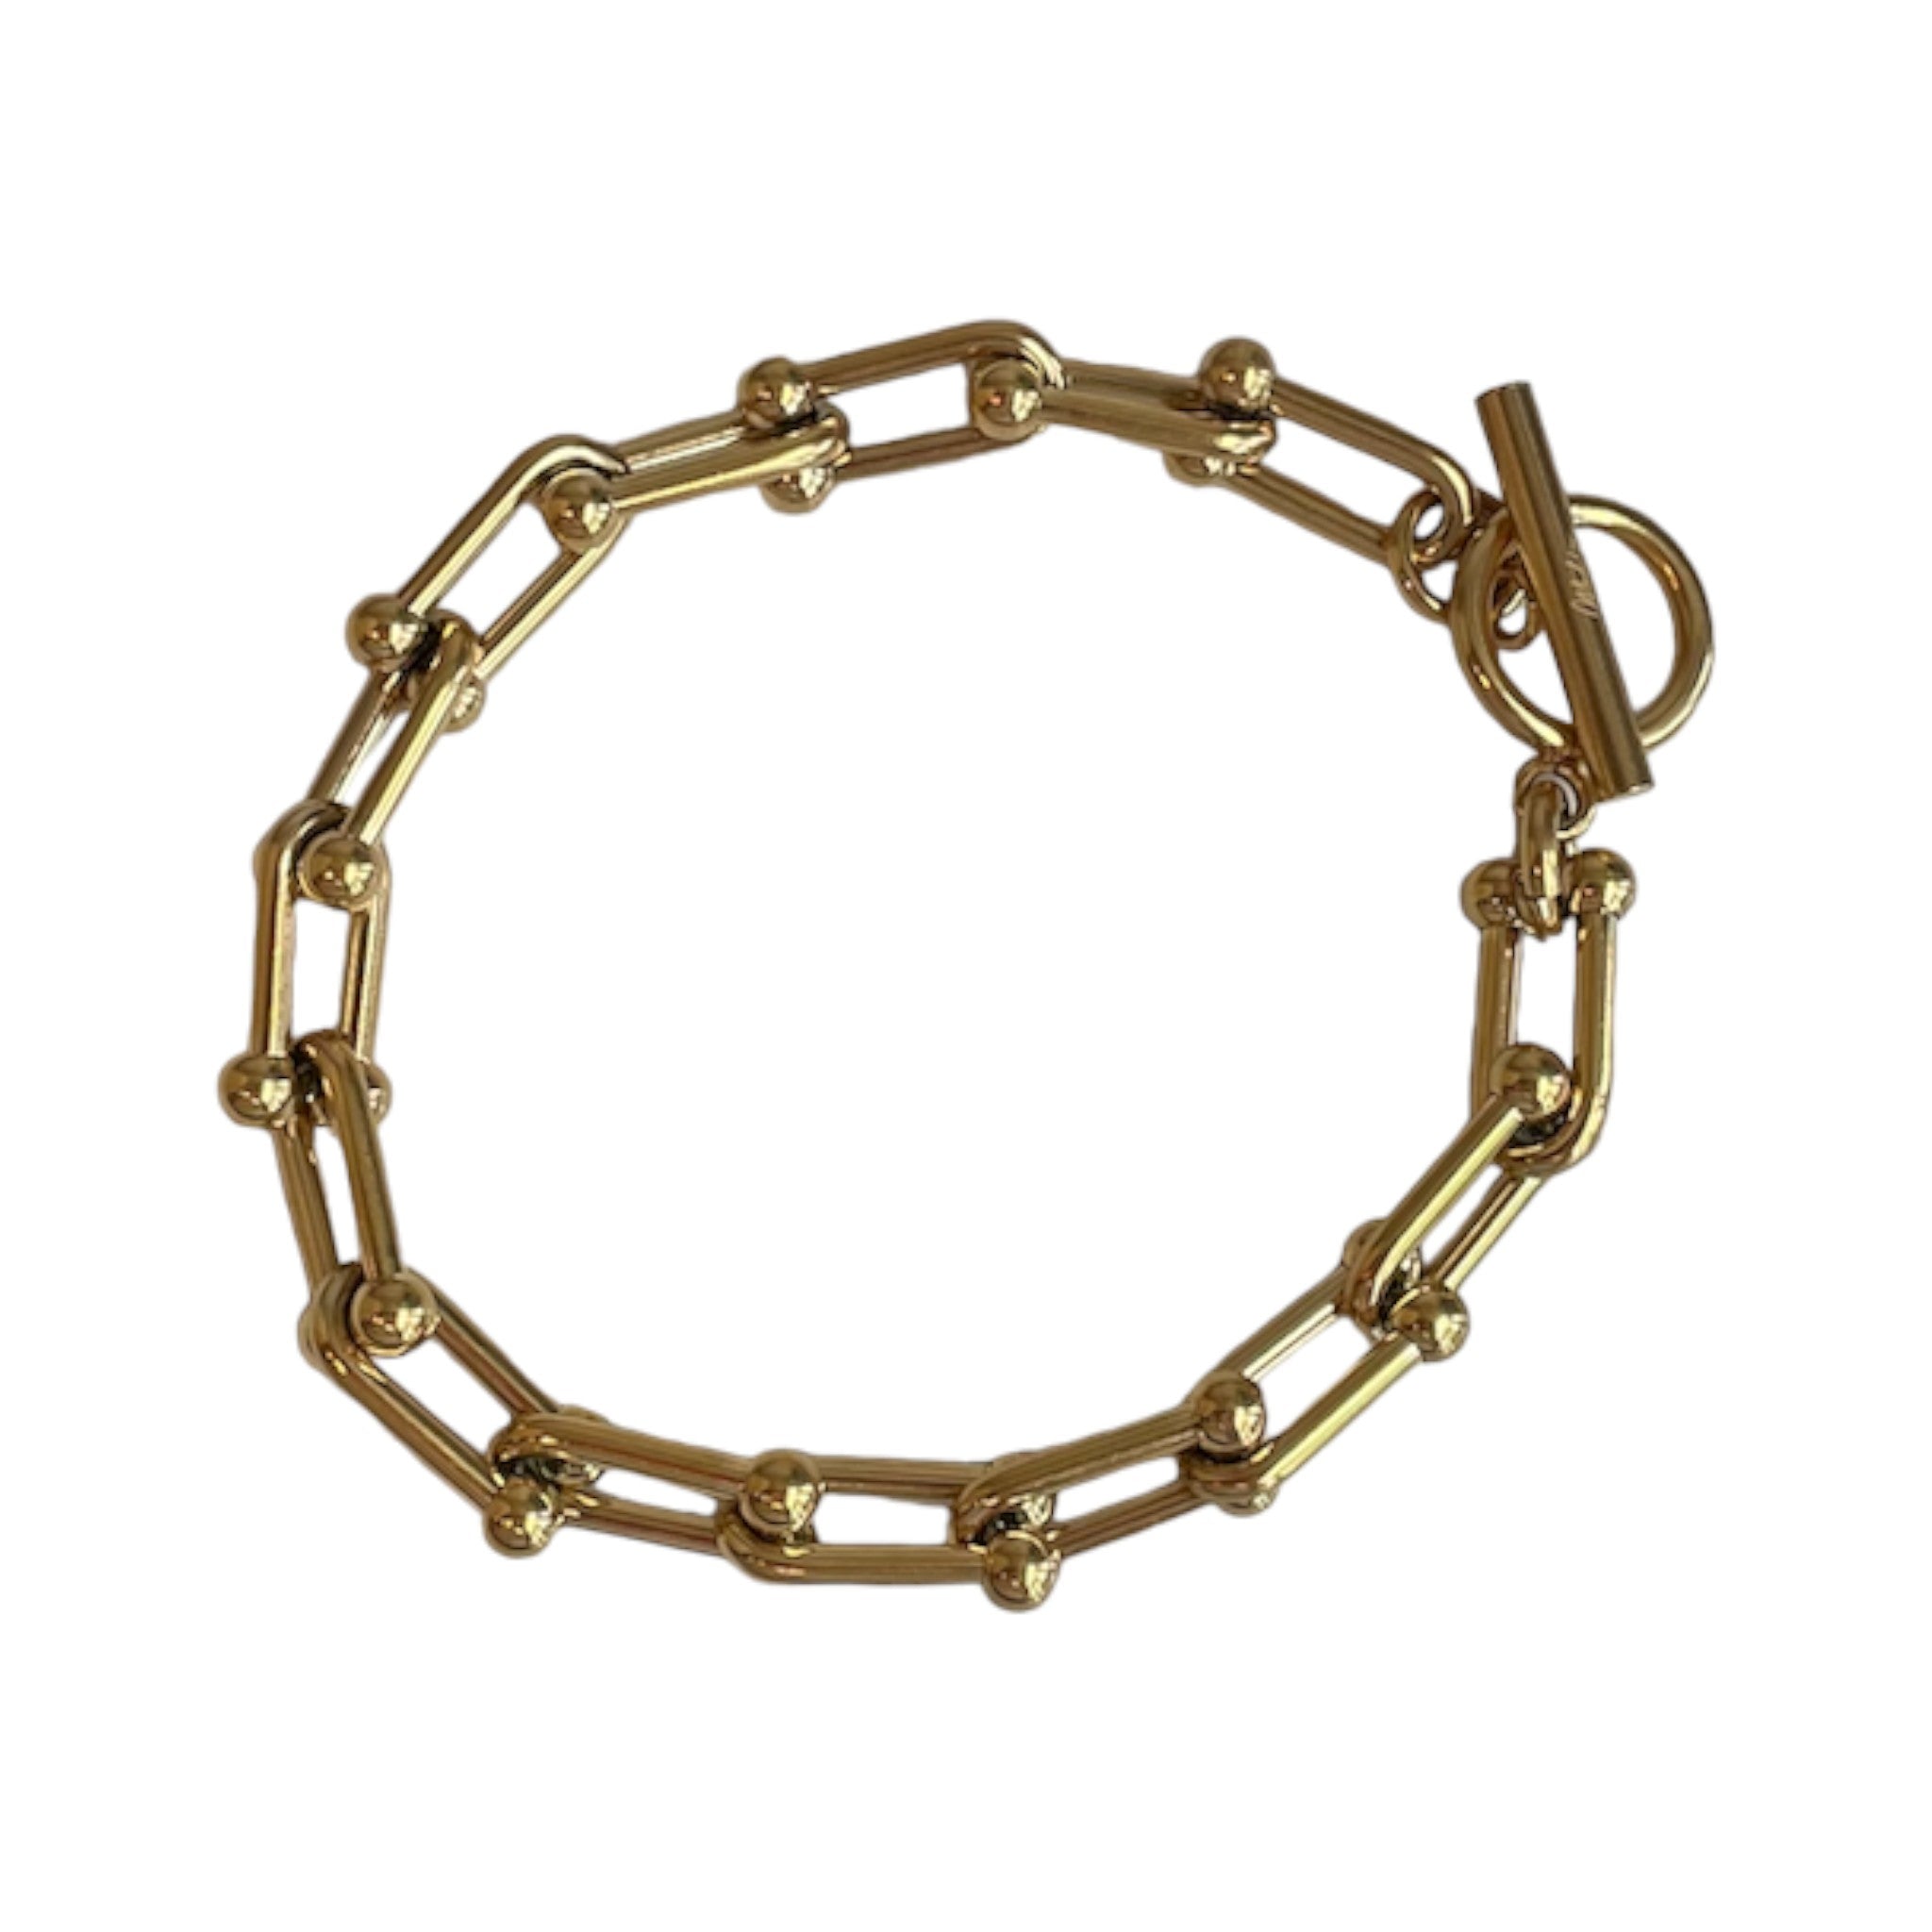 Mod + Jo - Madison Chain Bracelet - Gold Plate